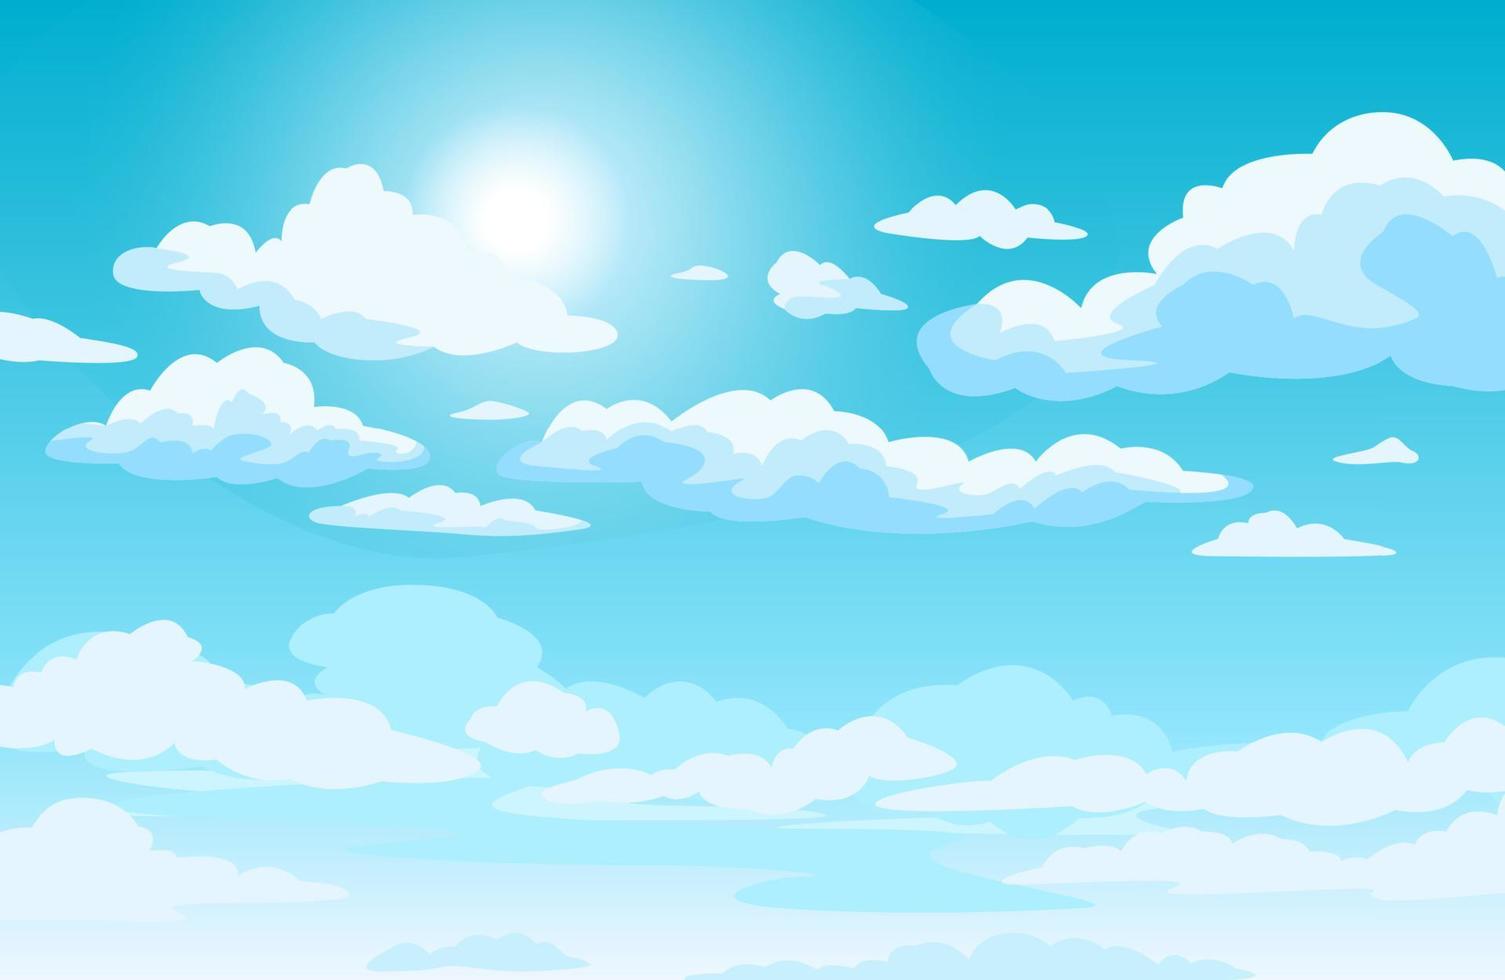 azul cielo con nubes anime estilo antecedentes con brillante Dom y blanco mullido nubes soleado día cielo escena dibujos animados vector ilustración